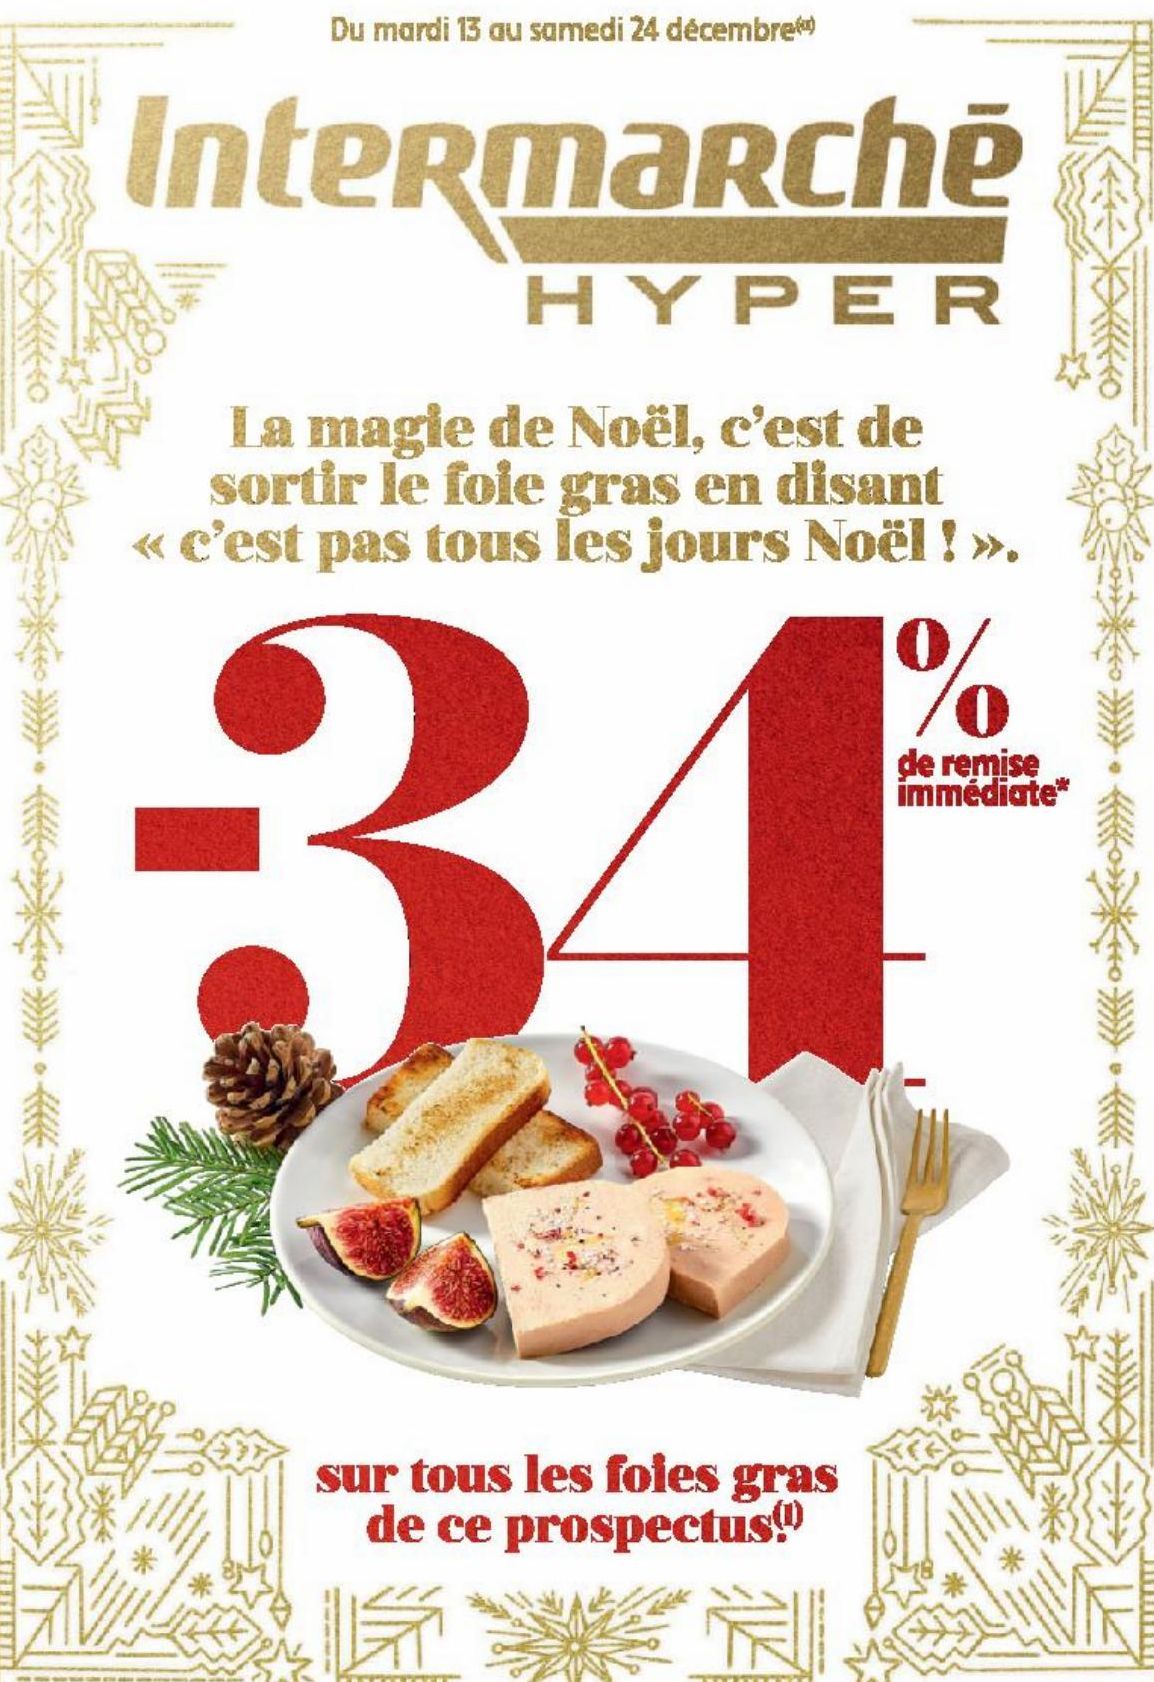 InteRmaRché HYPER La magie de Noel, c'est de sortir le foie gras en disant <<c'est pas tous les jours Noel!>>